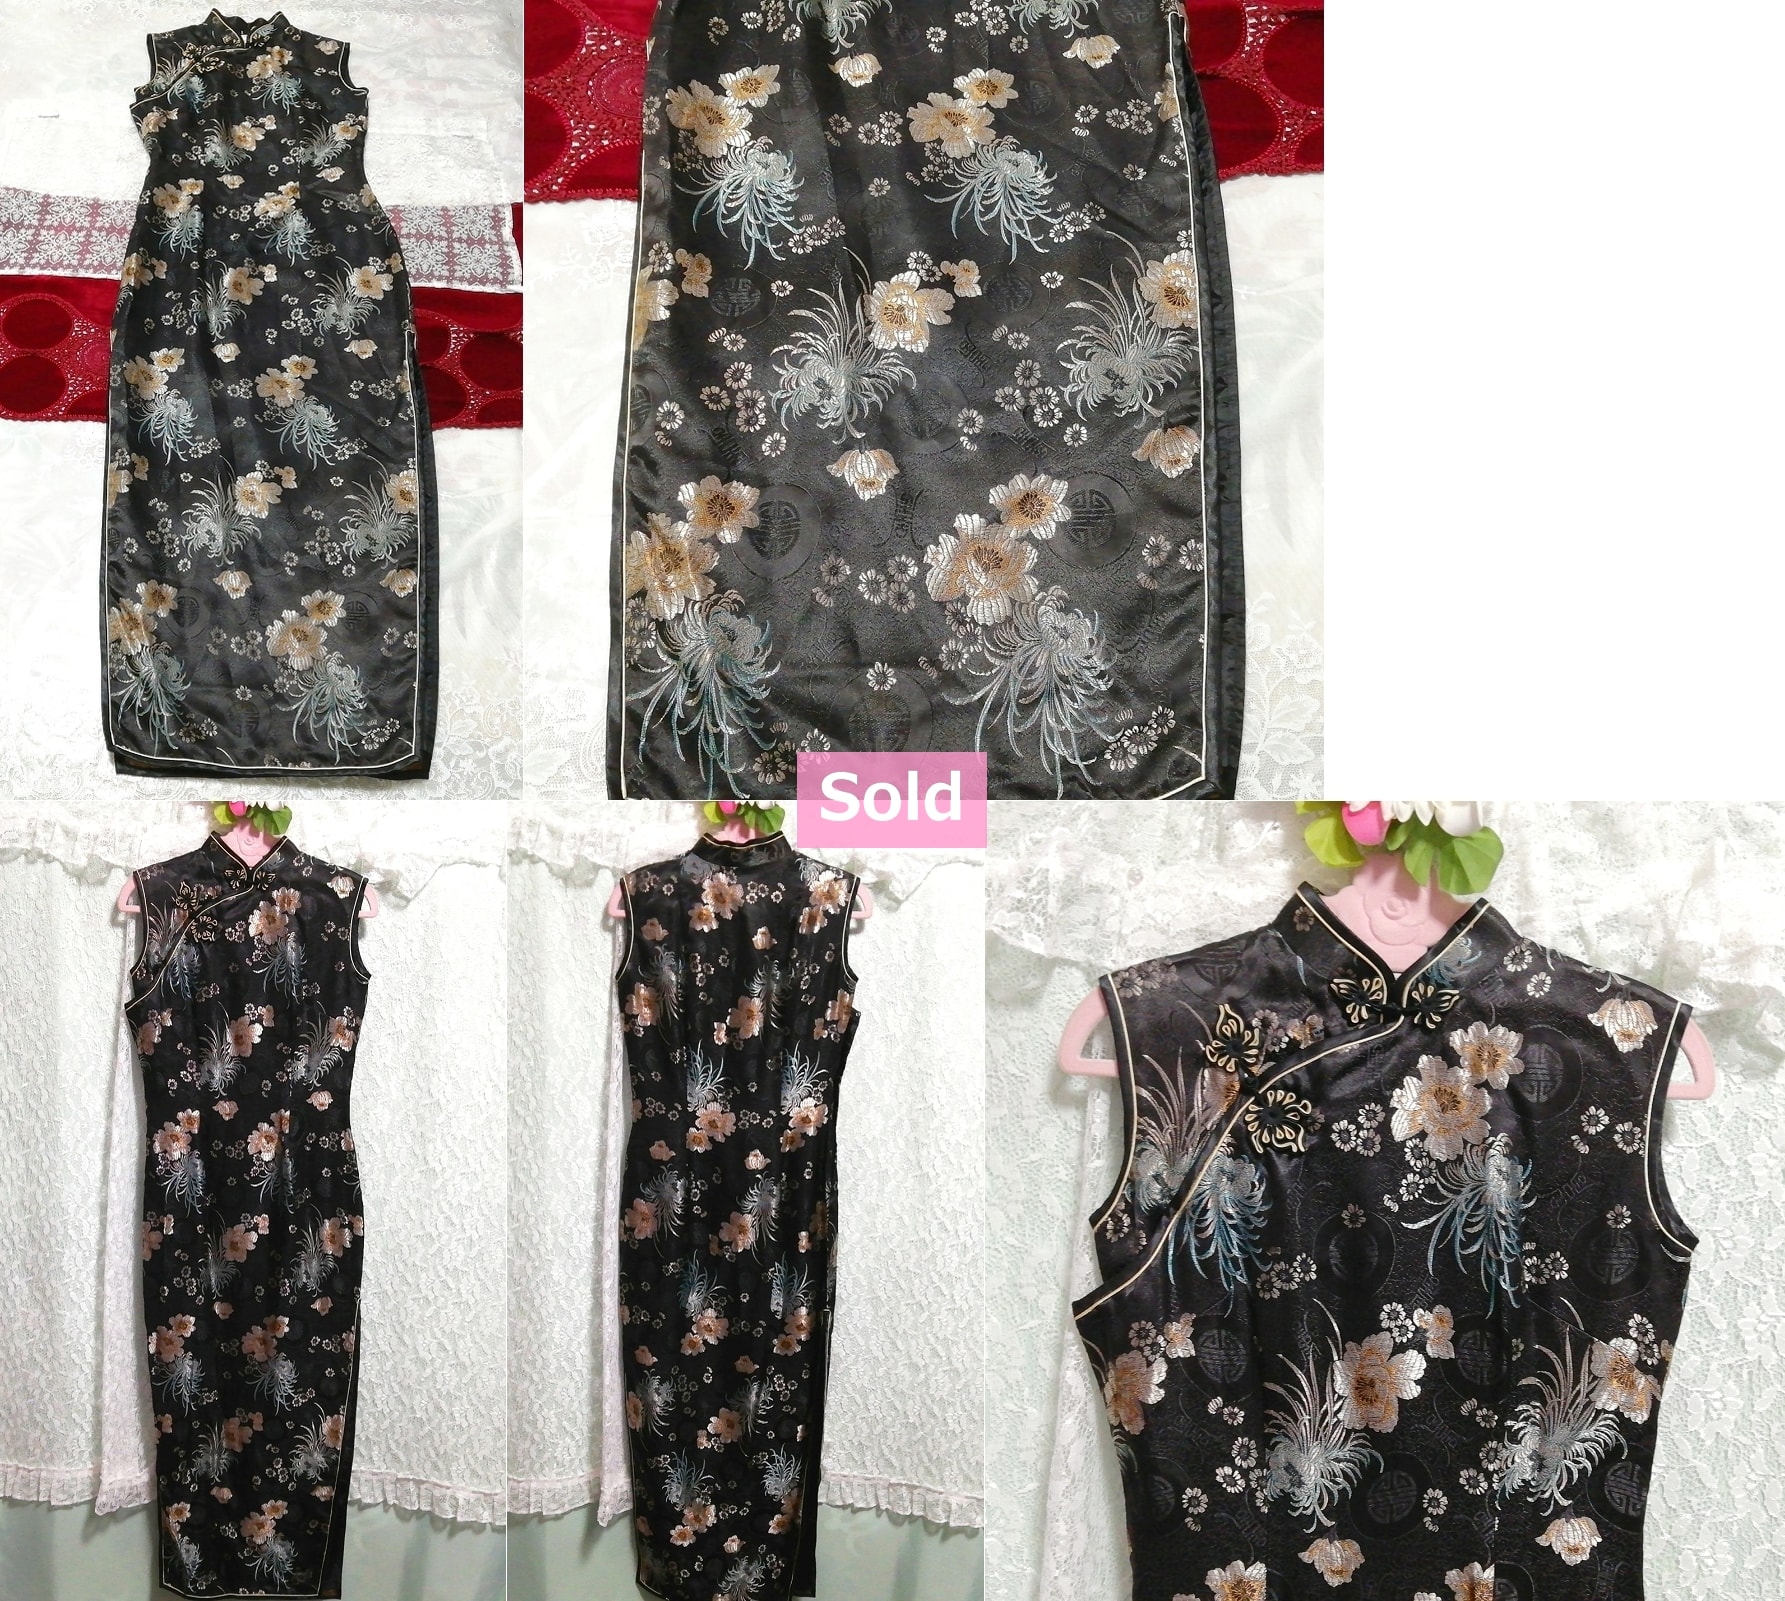 花柄黒チャイナドレスマキシワンピースドレス Flower pattern black cheongsam china maxi dress, レディースファッション, フォーマル, ワンピース